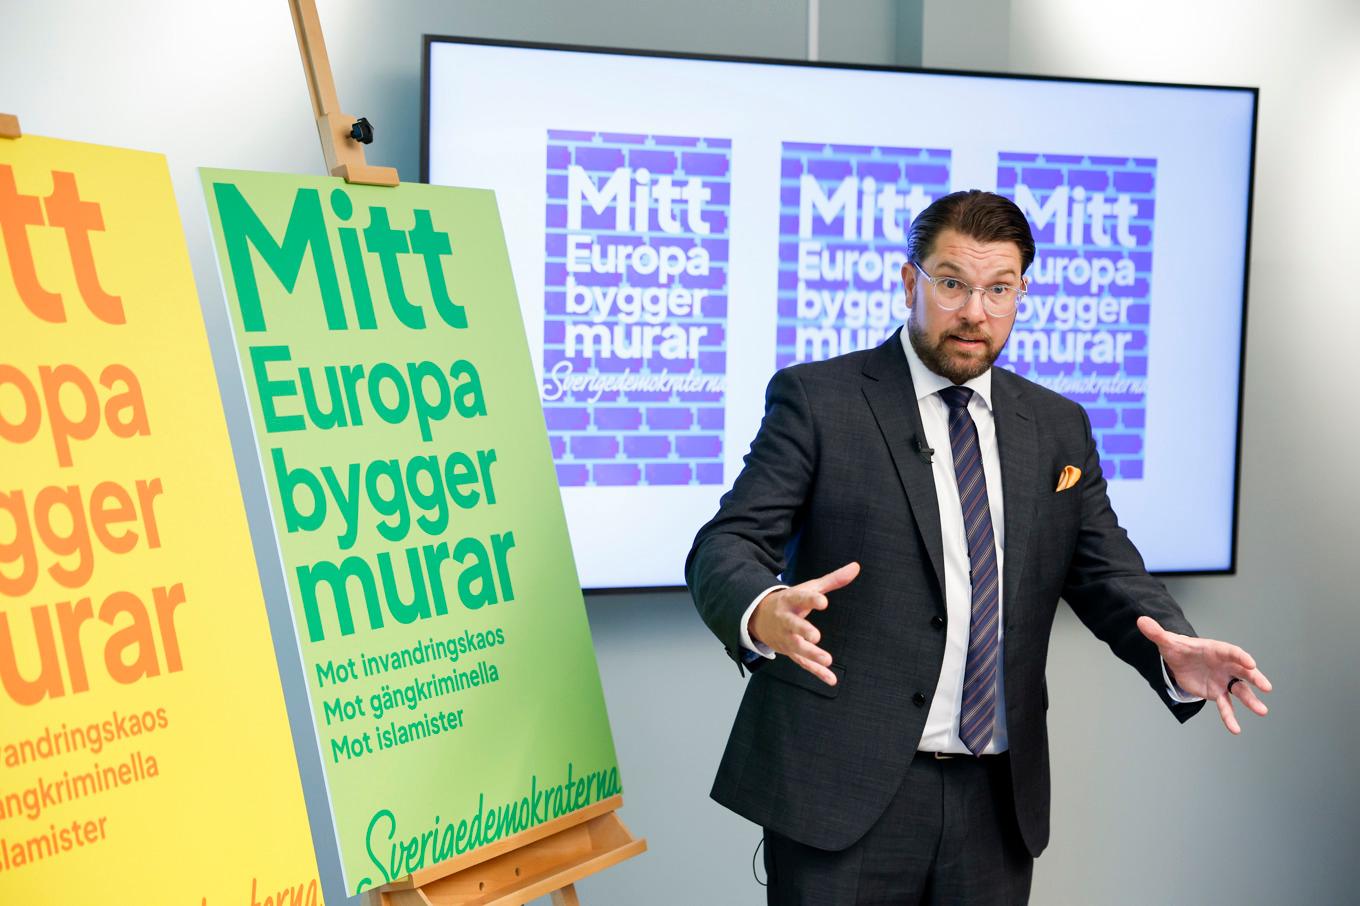 Sverigedemokraternas partiledare Jimmie Åkesson (SD) presenterar partiets kampanjbudskap och valaffischer. Foto: Christine Olsson/TT